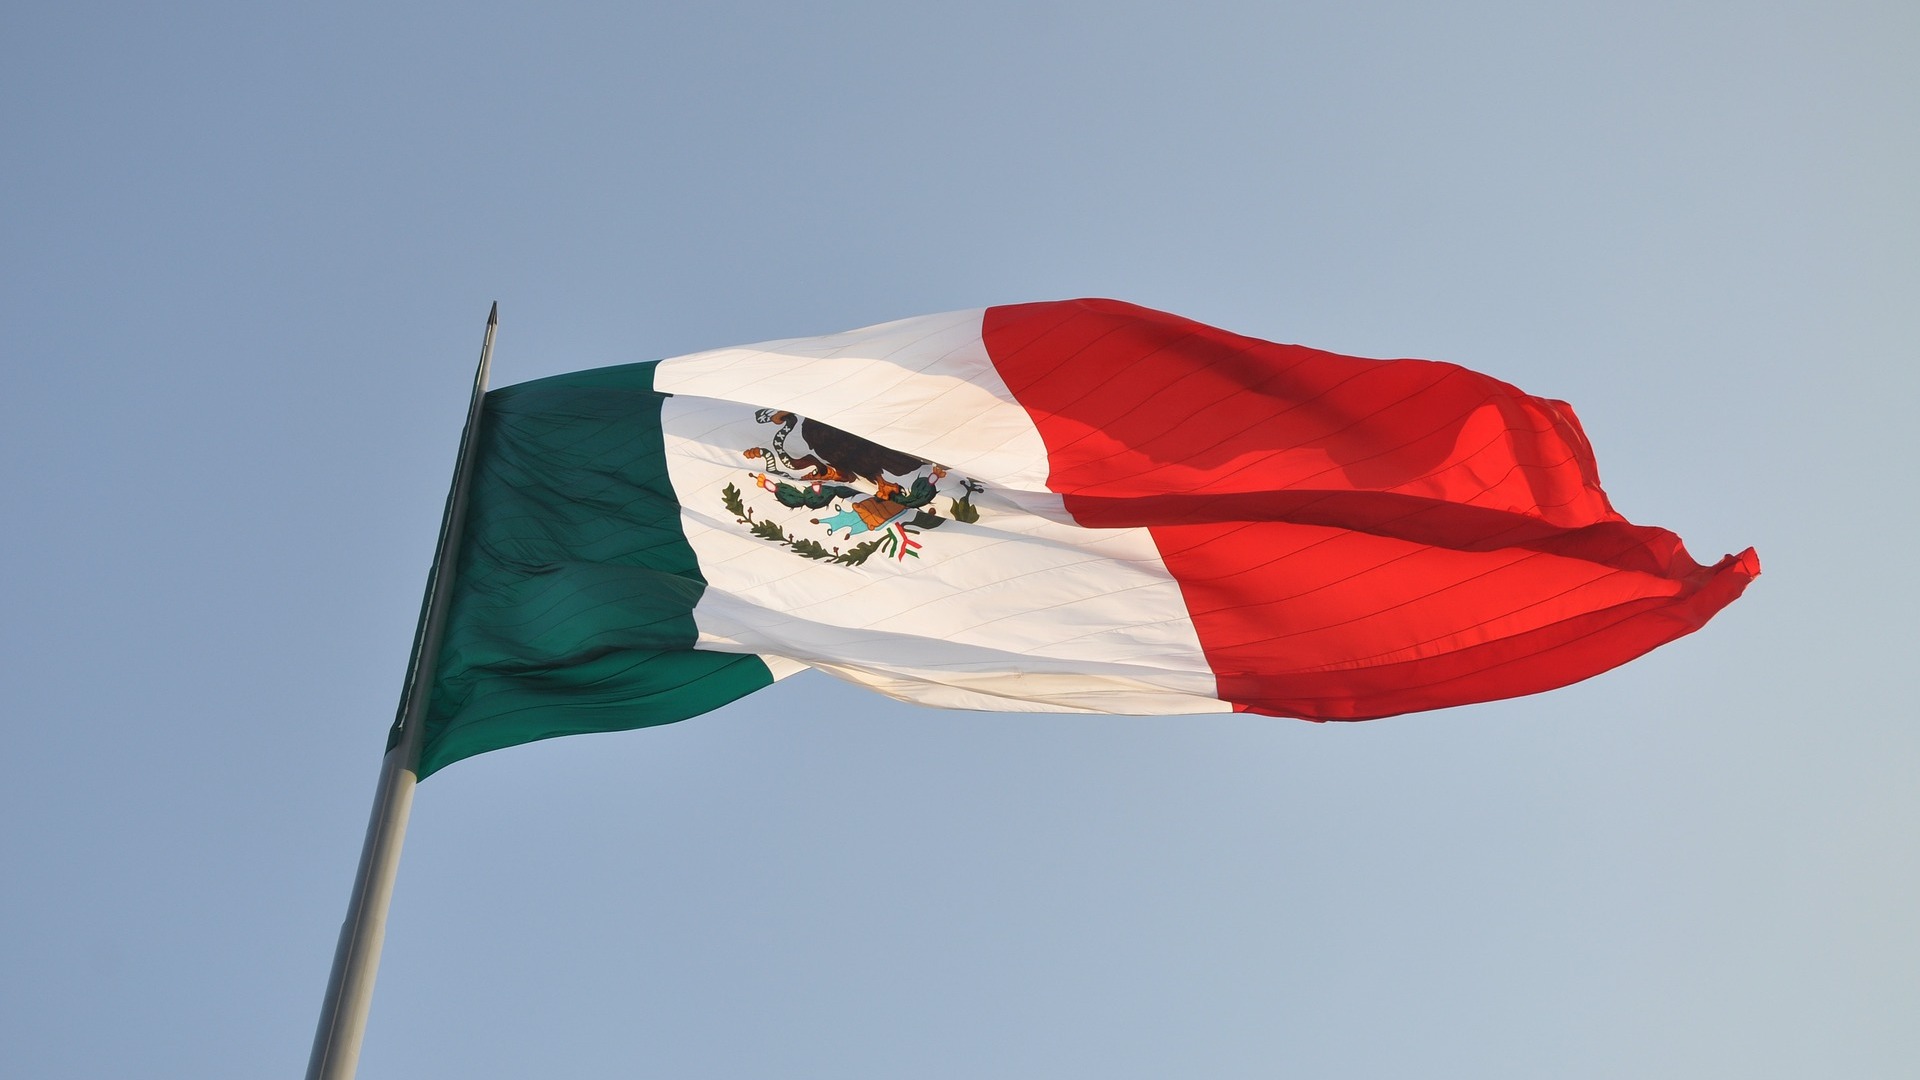 Мексика объявила о разрыве дипотношений с Эквадором после штурма посольства